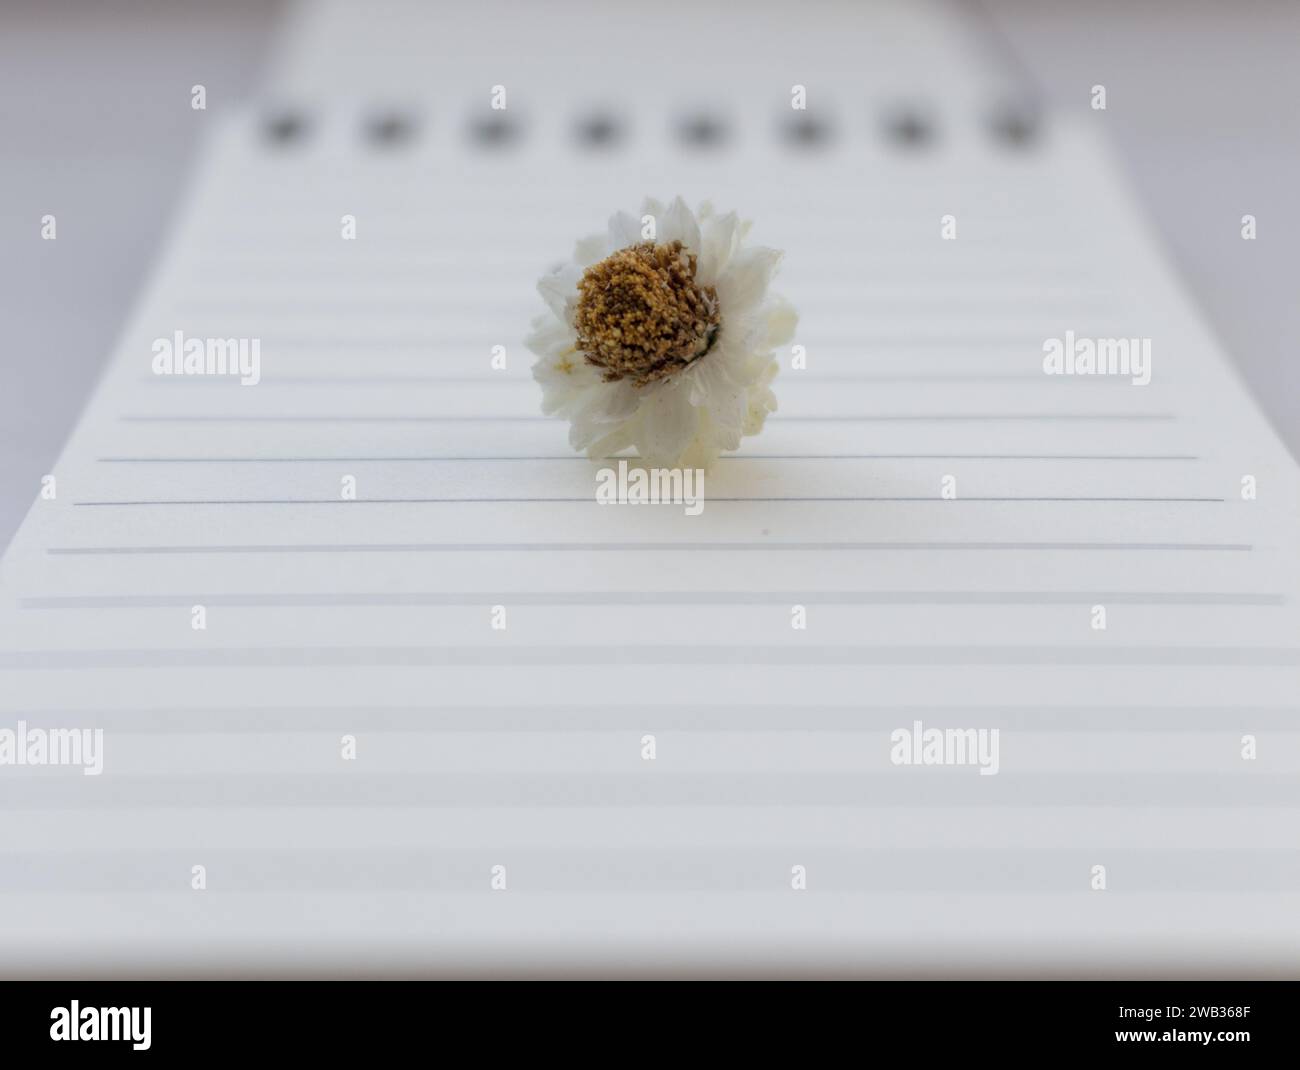 Petite fleur de camomille blanche (camomille) sur cahier ouvert avec fond vierge non focalisé. Nature morte minimale. Concept d'éducation. Banque D'Images